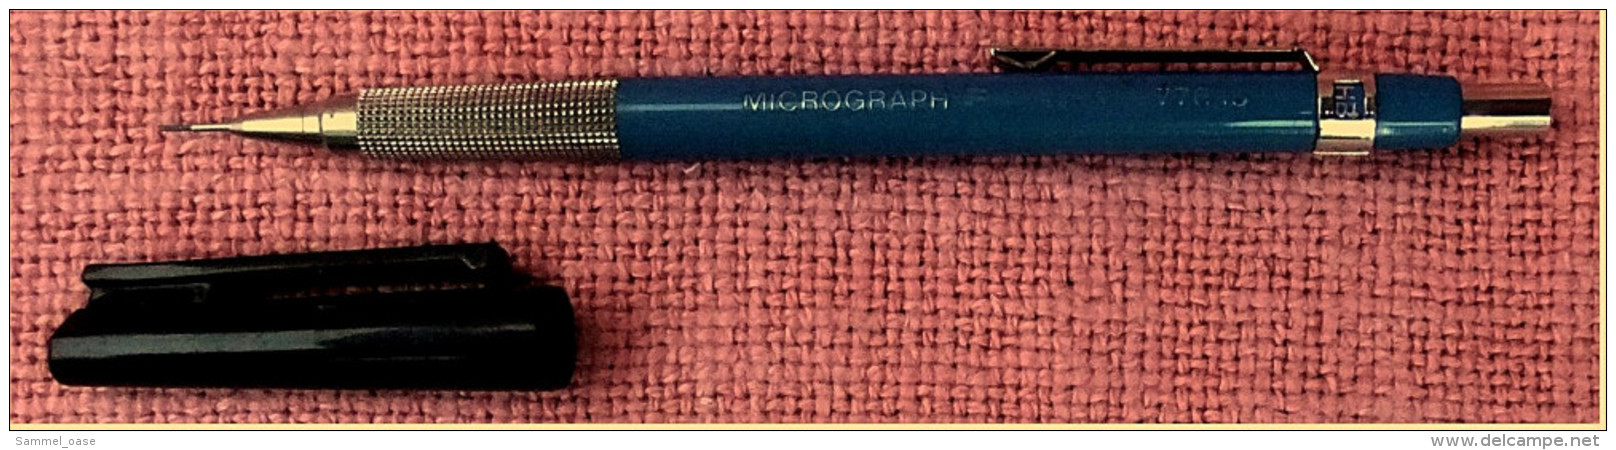 Seltener Staedtler Micrograph F 77015 Bleistift / Druckbleistift - 0,5 Mm - Blau - Schrijfgerief